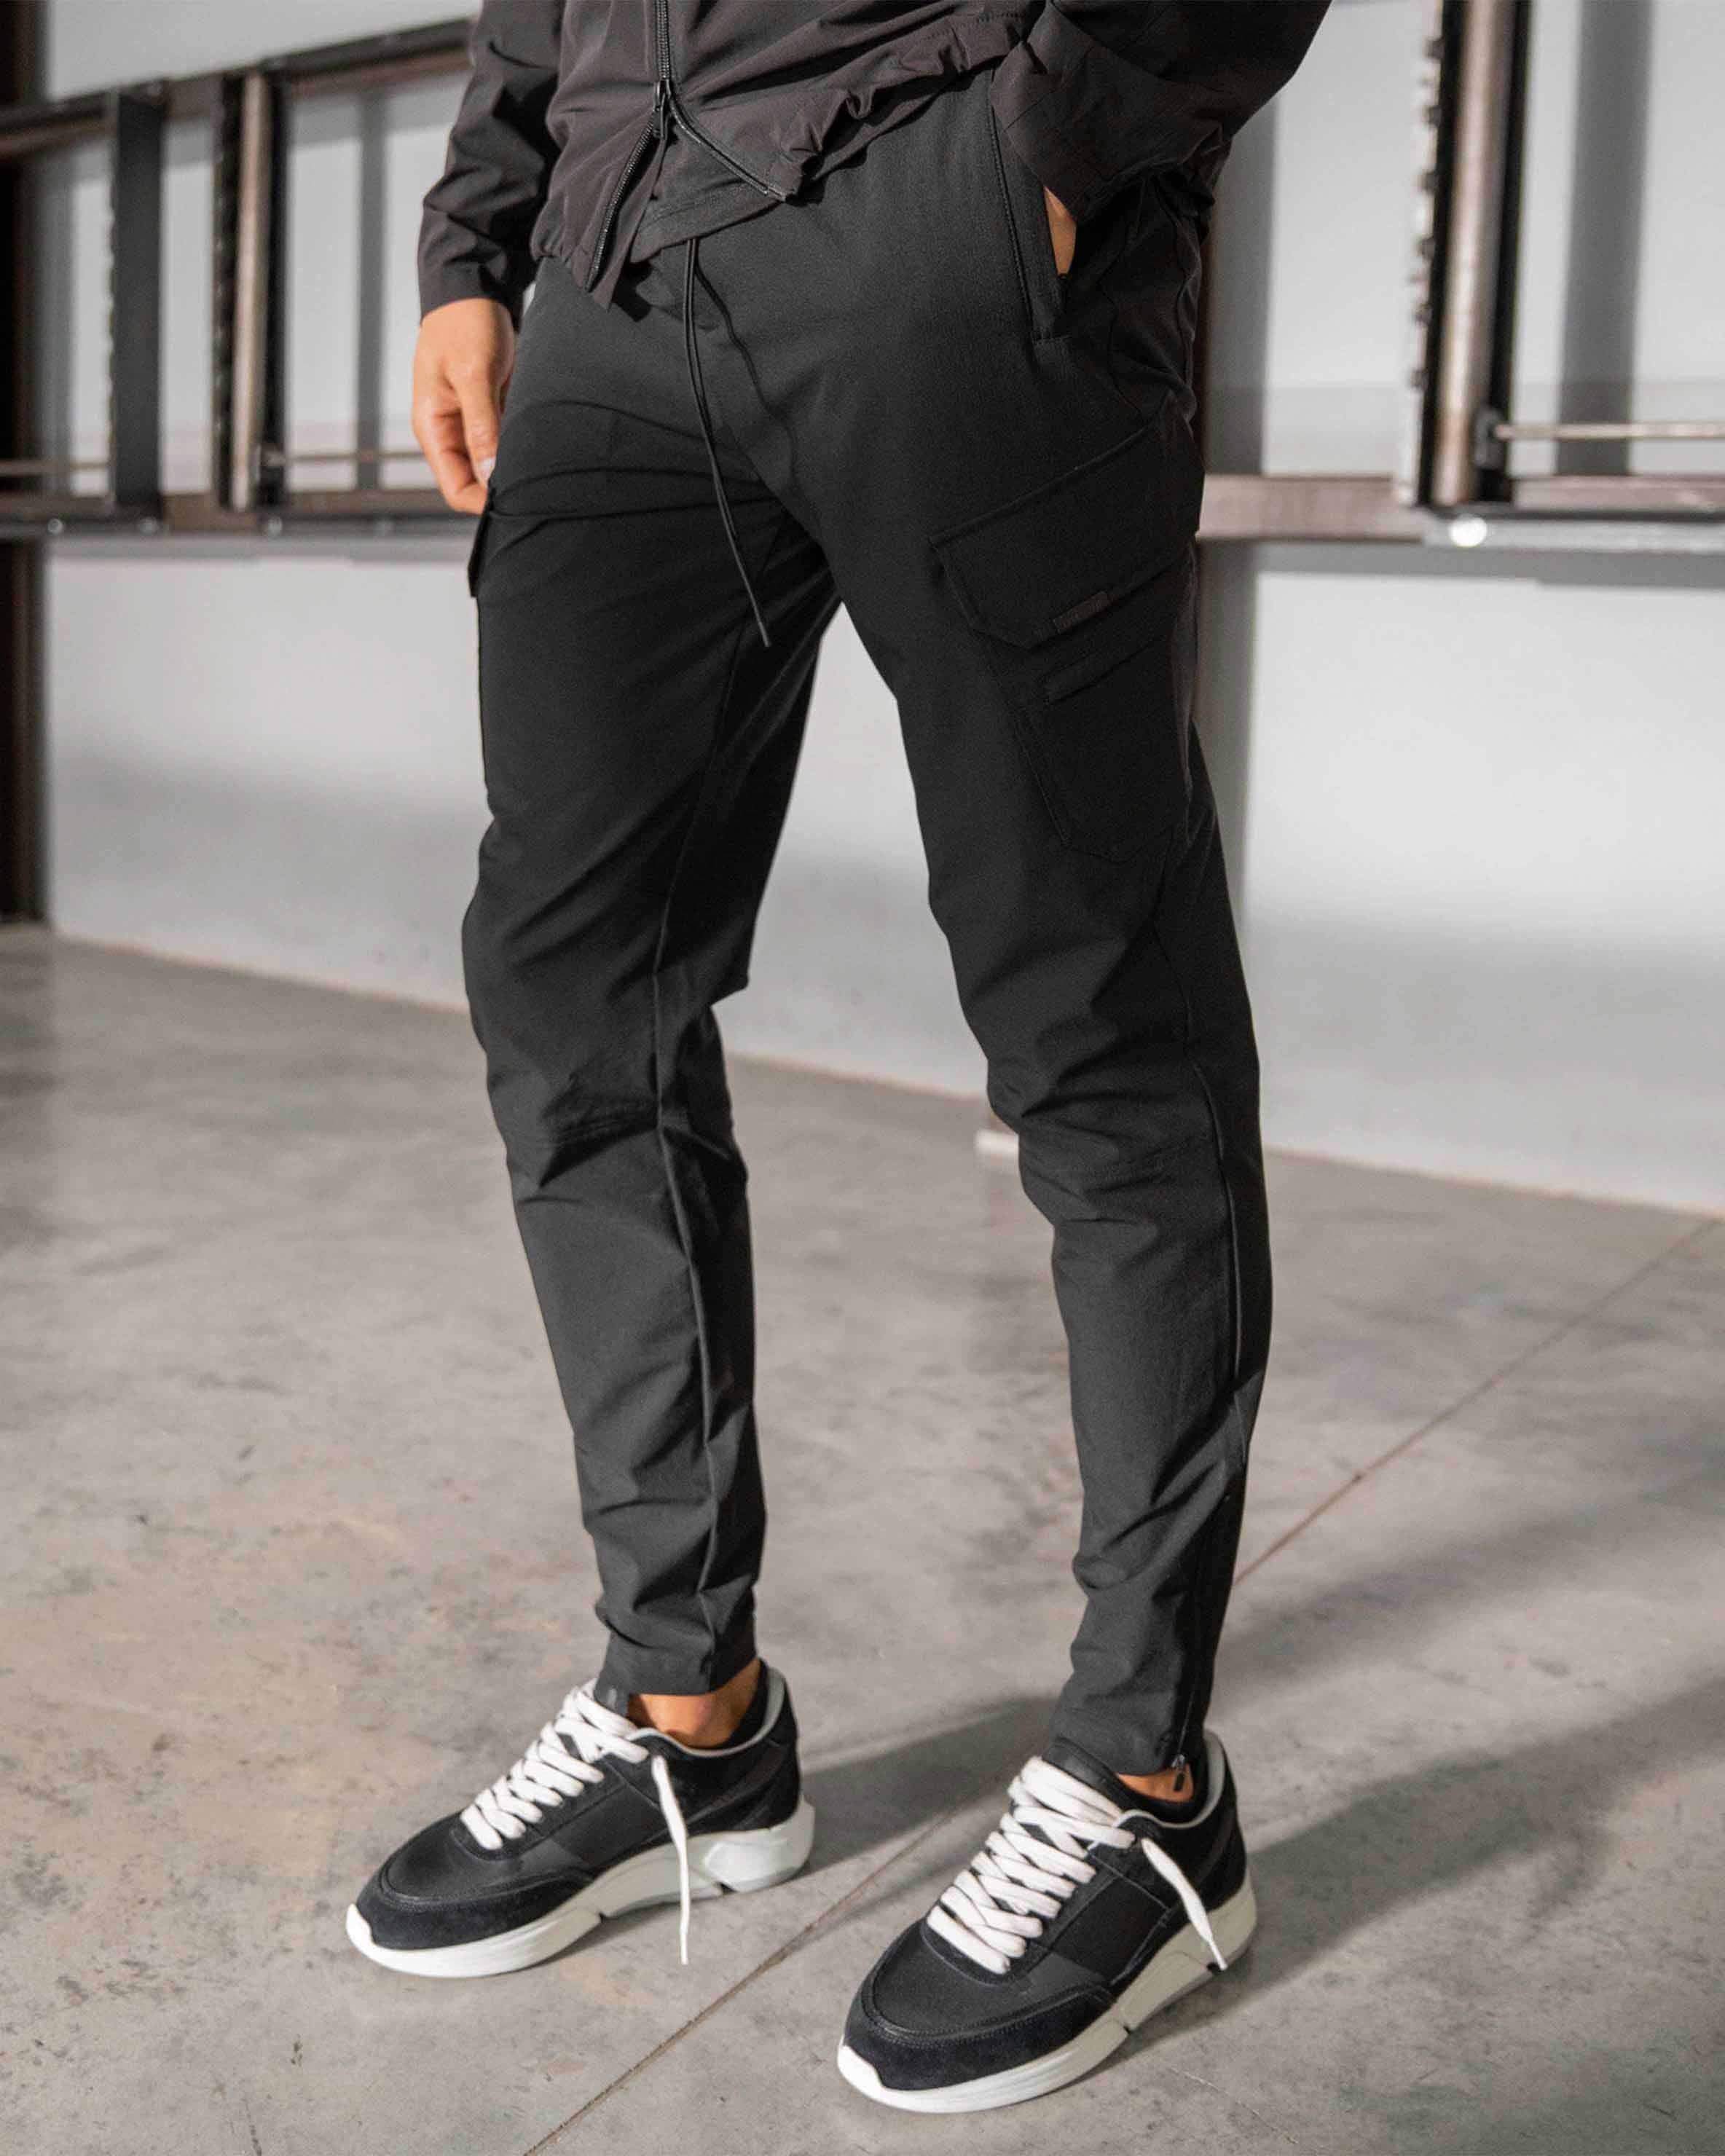 MARKVIEW Stylish Men's Black Cargo Pant